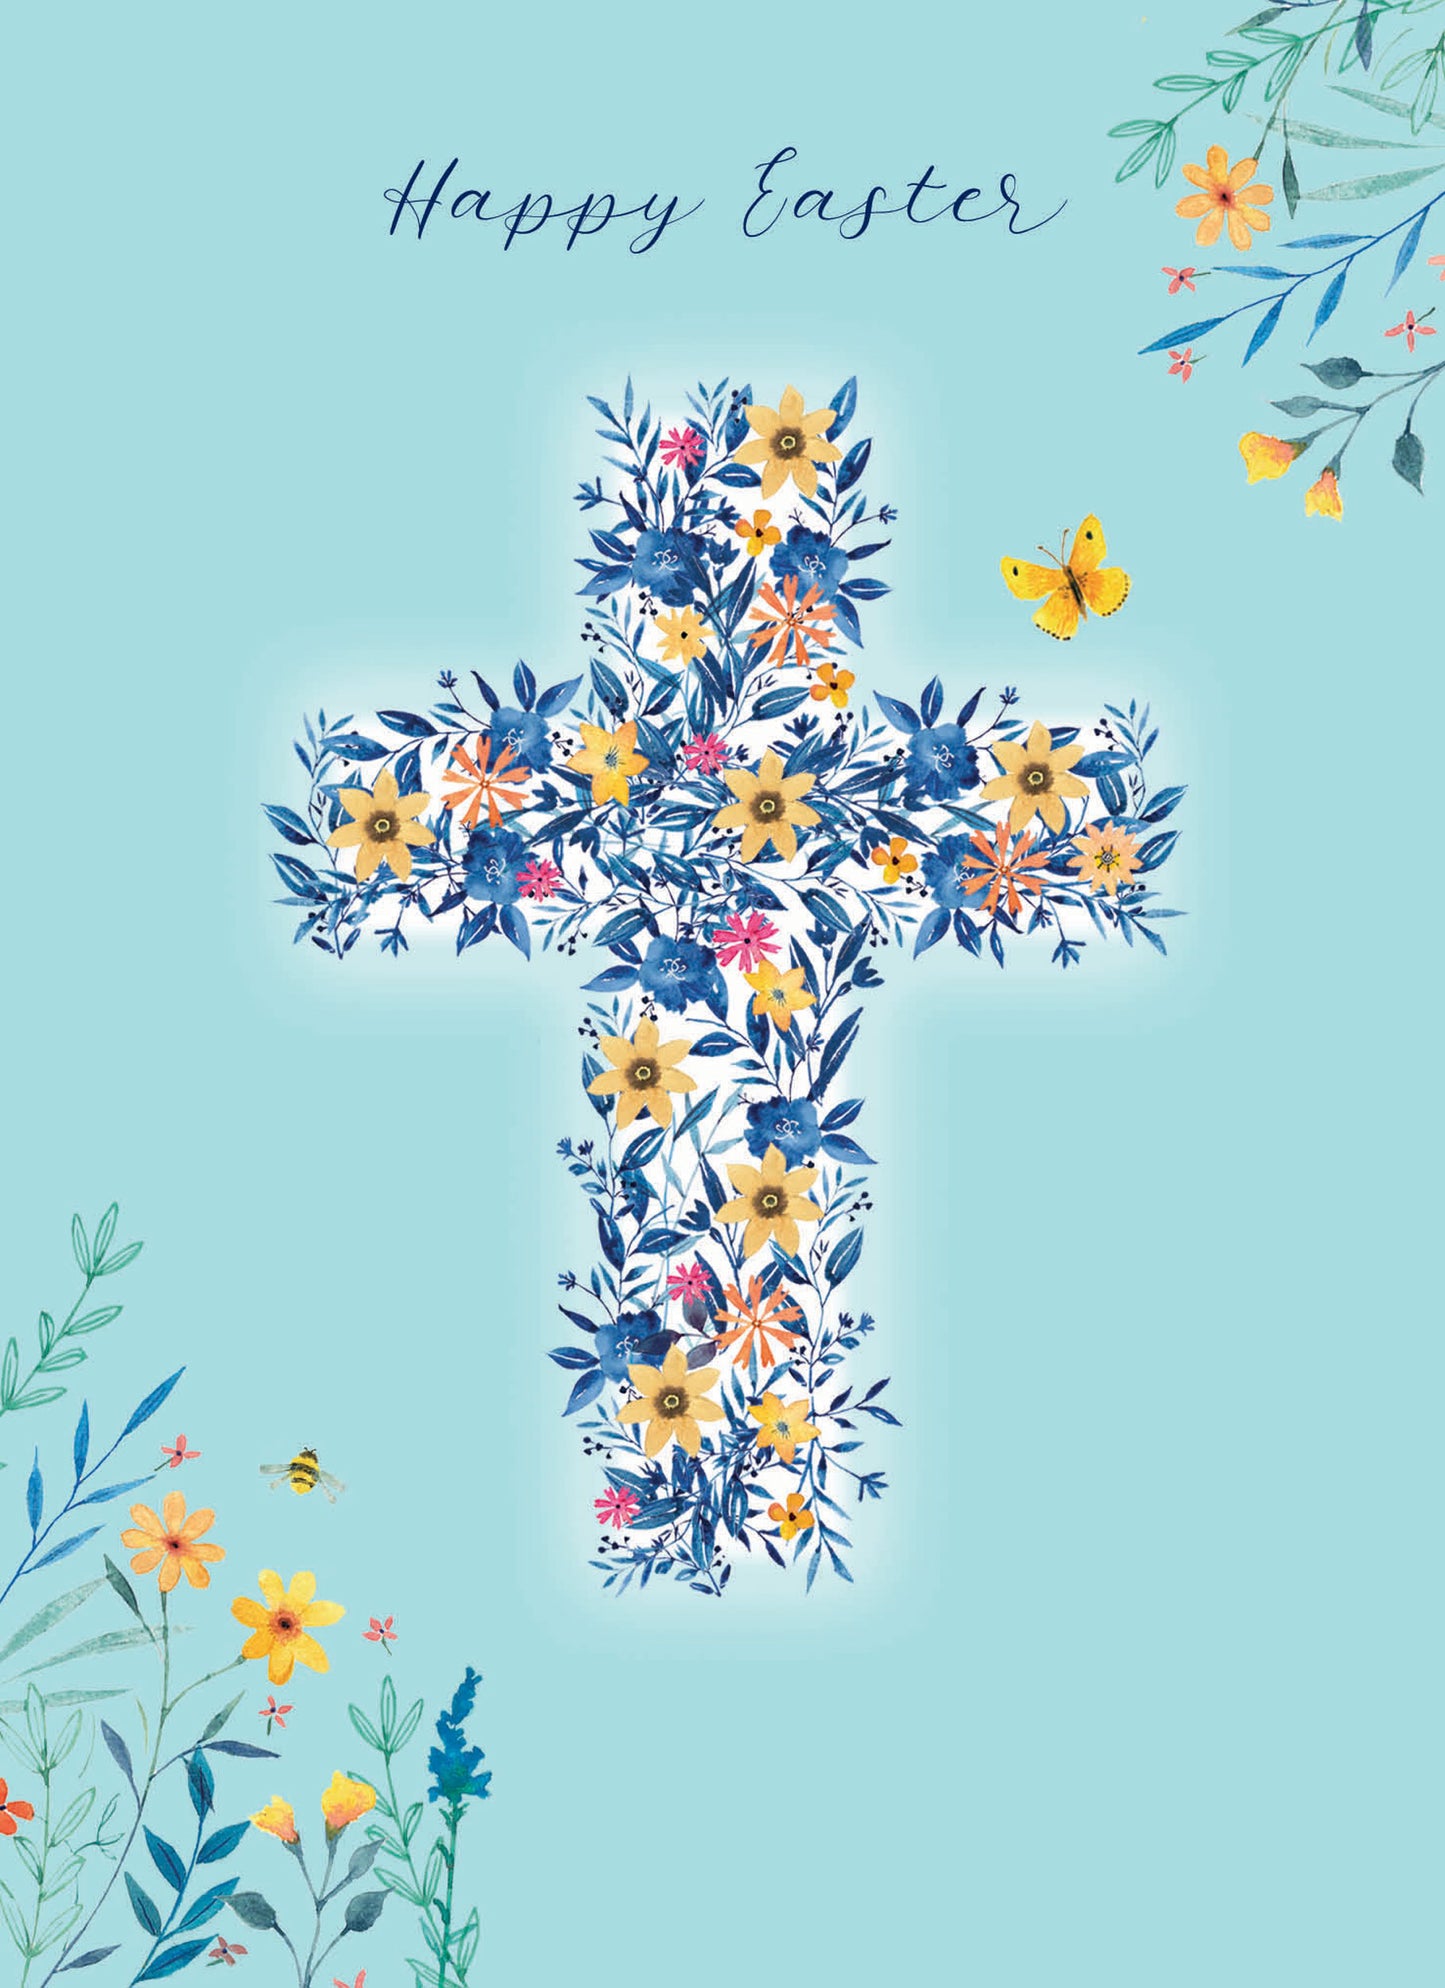 Easter Card - Easter Cross